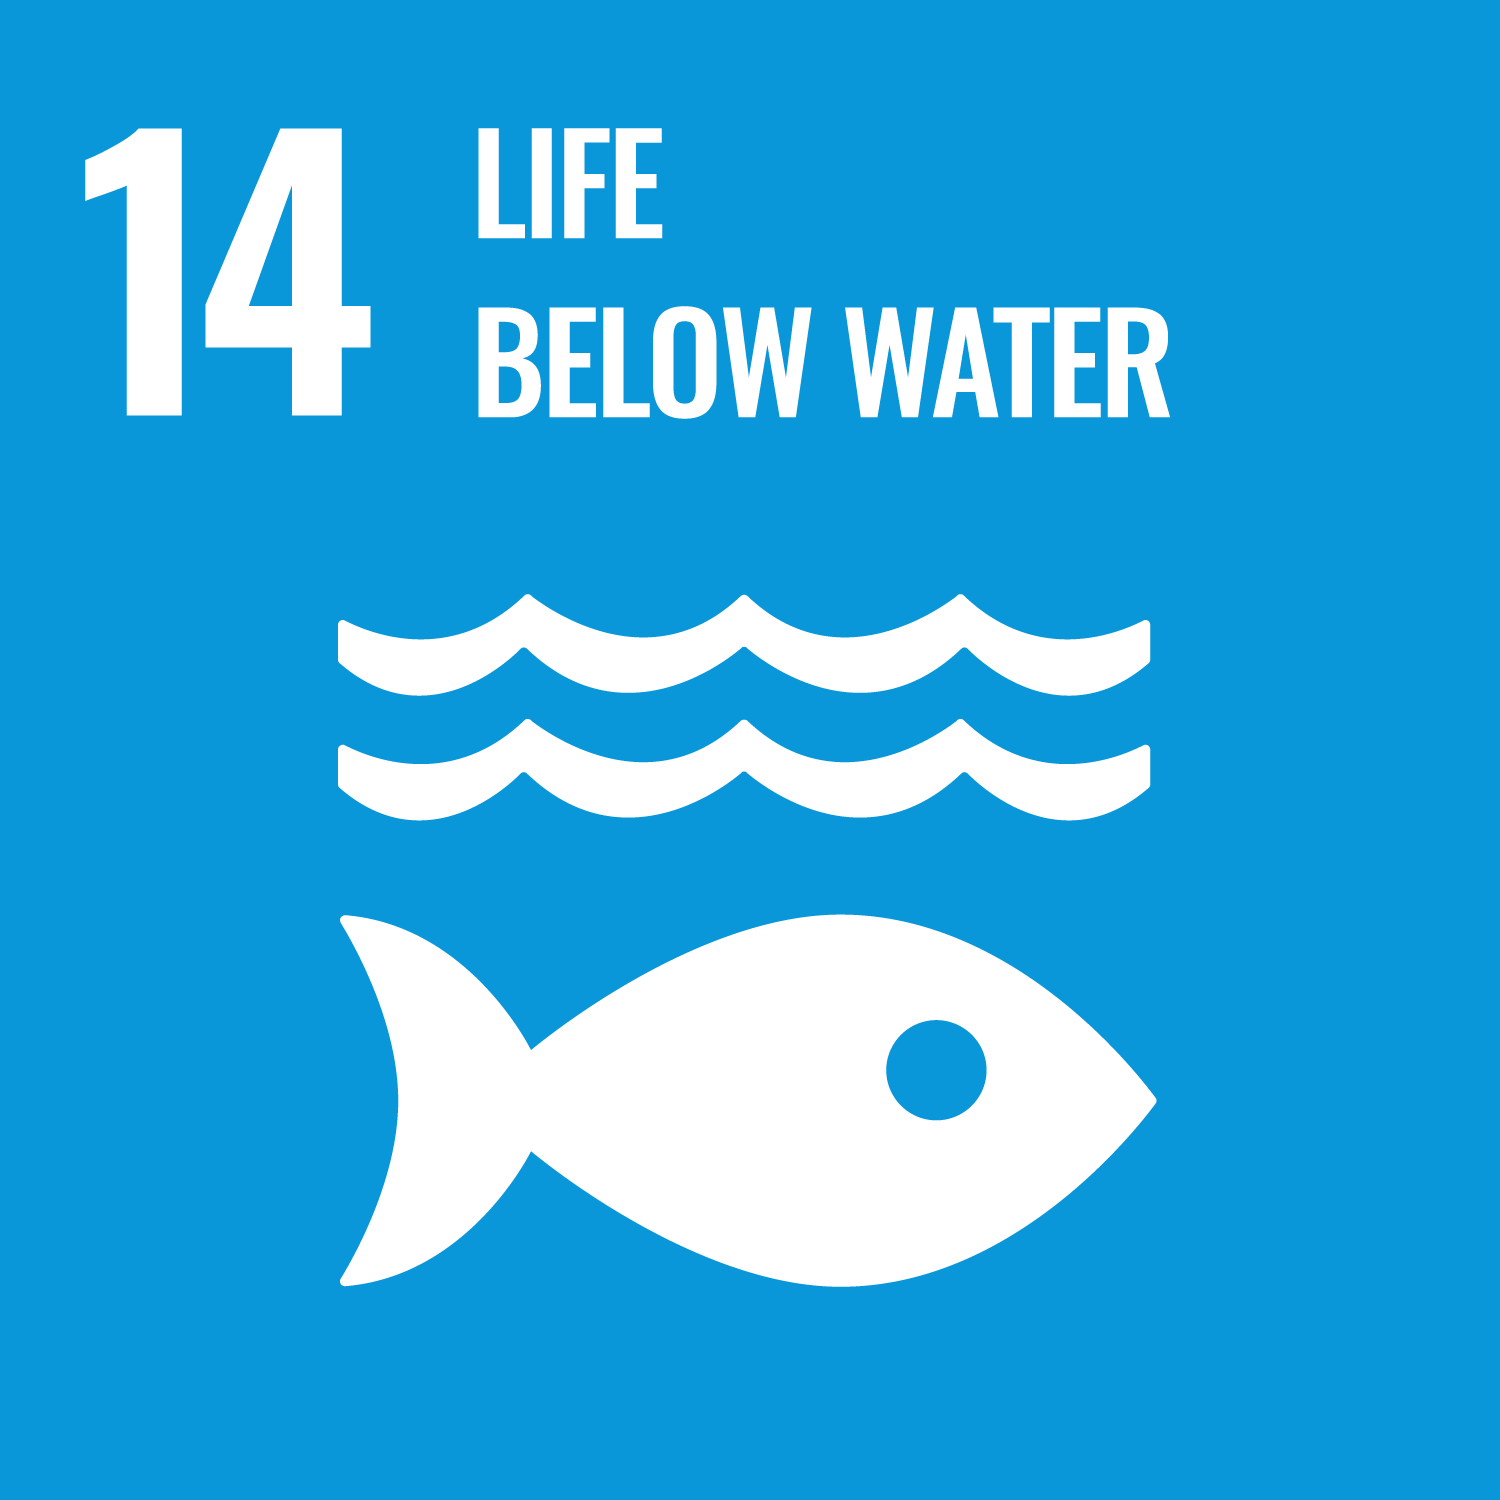 UN SDG goal 14: Life below water